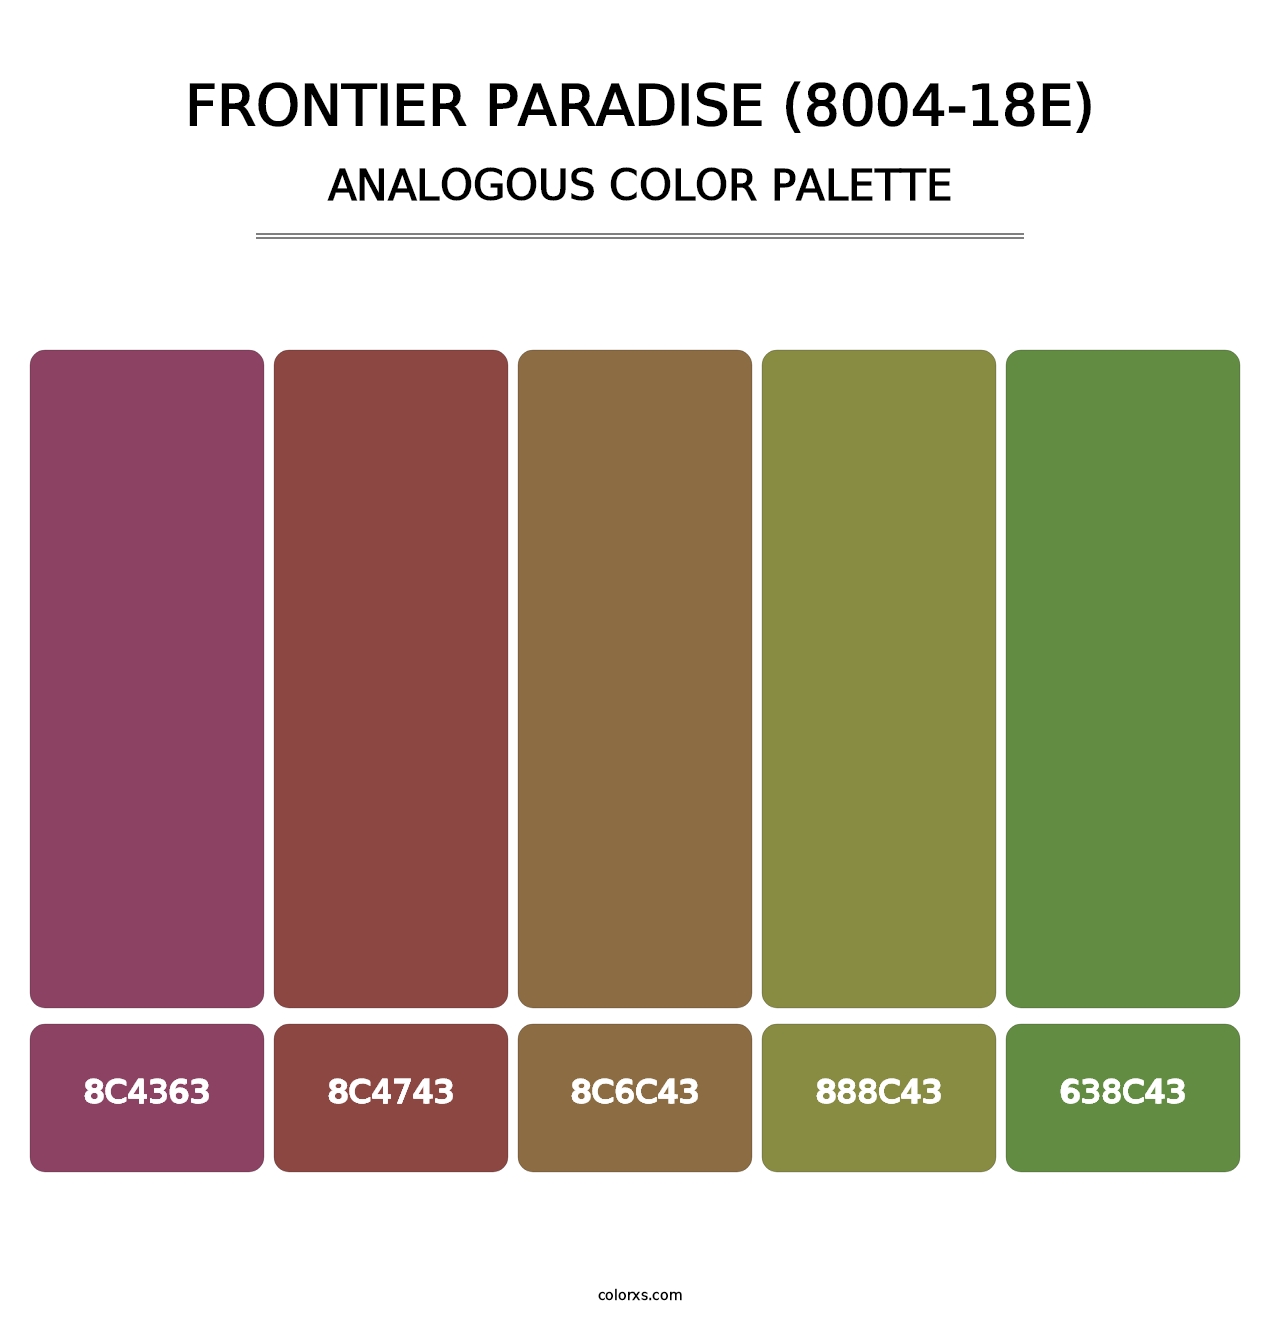 Frontier Paradise (8004-18E) - Analogous Color Palette